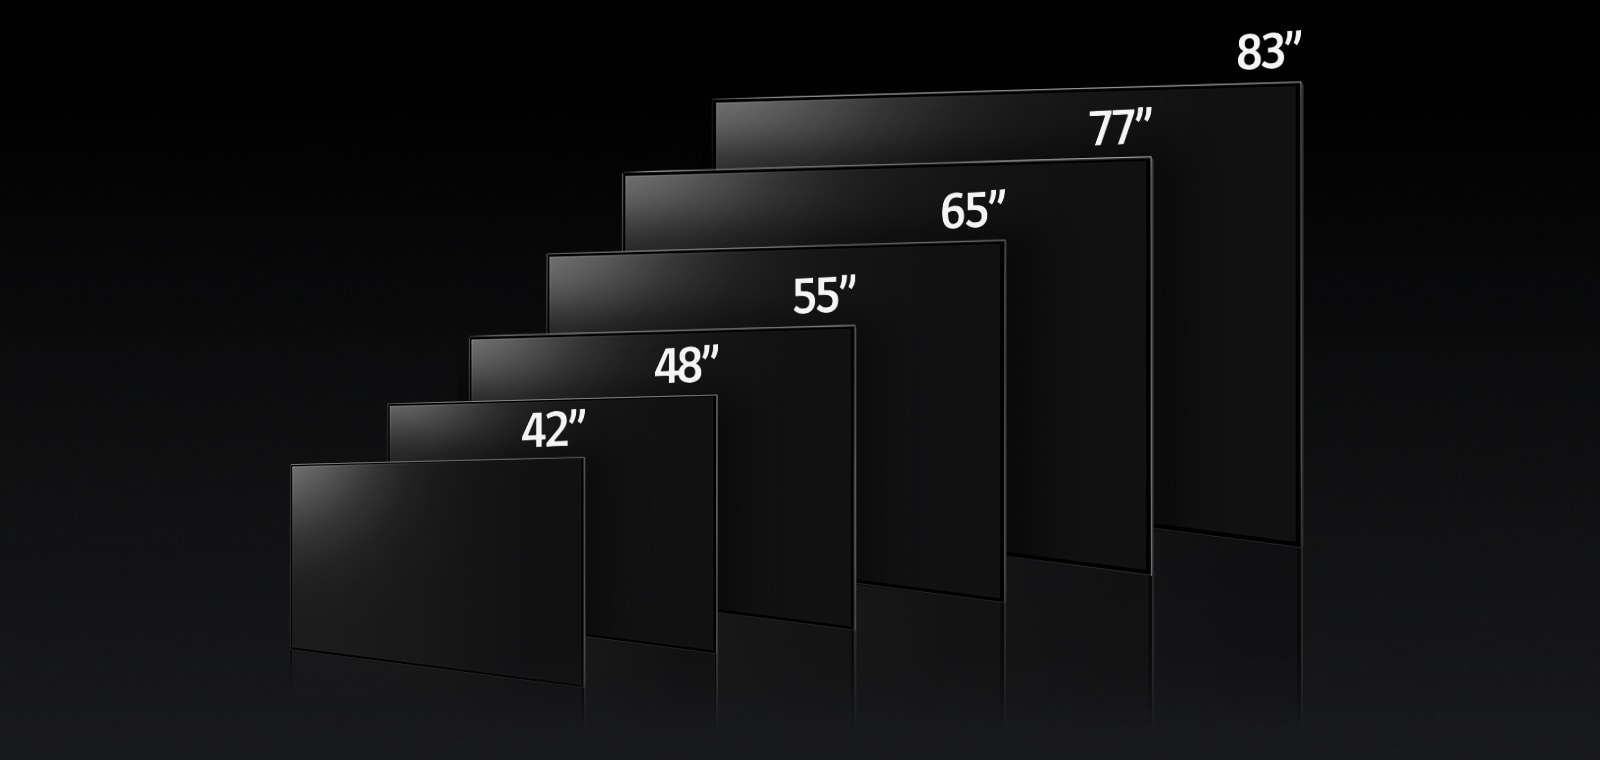 Slika na kojoj se porede različite dimenzije LG OLED G3 – 42", 48",55", 65", 77" i 83".